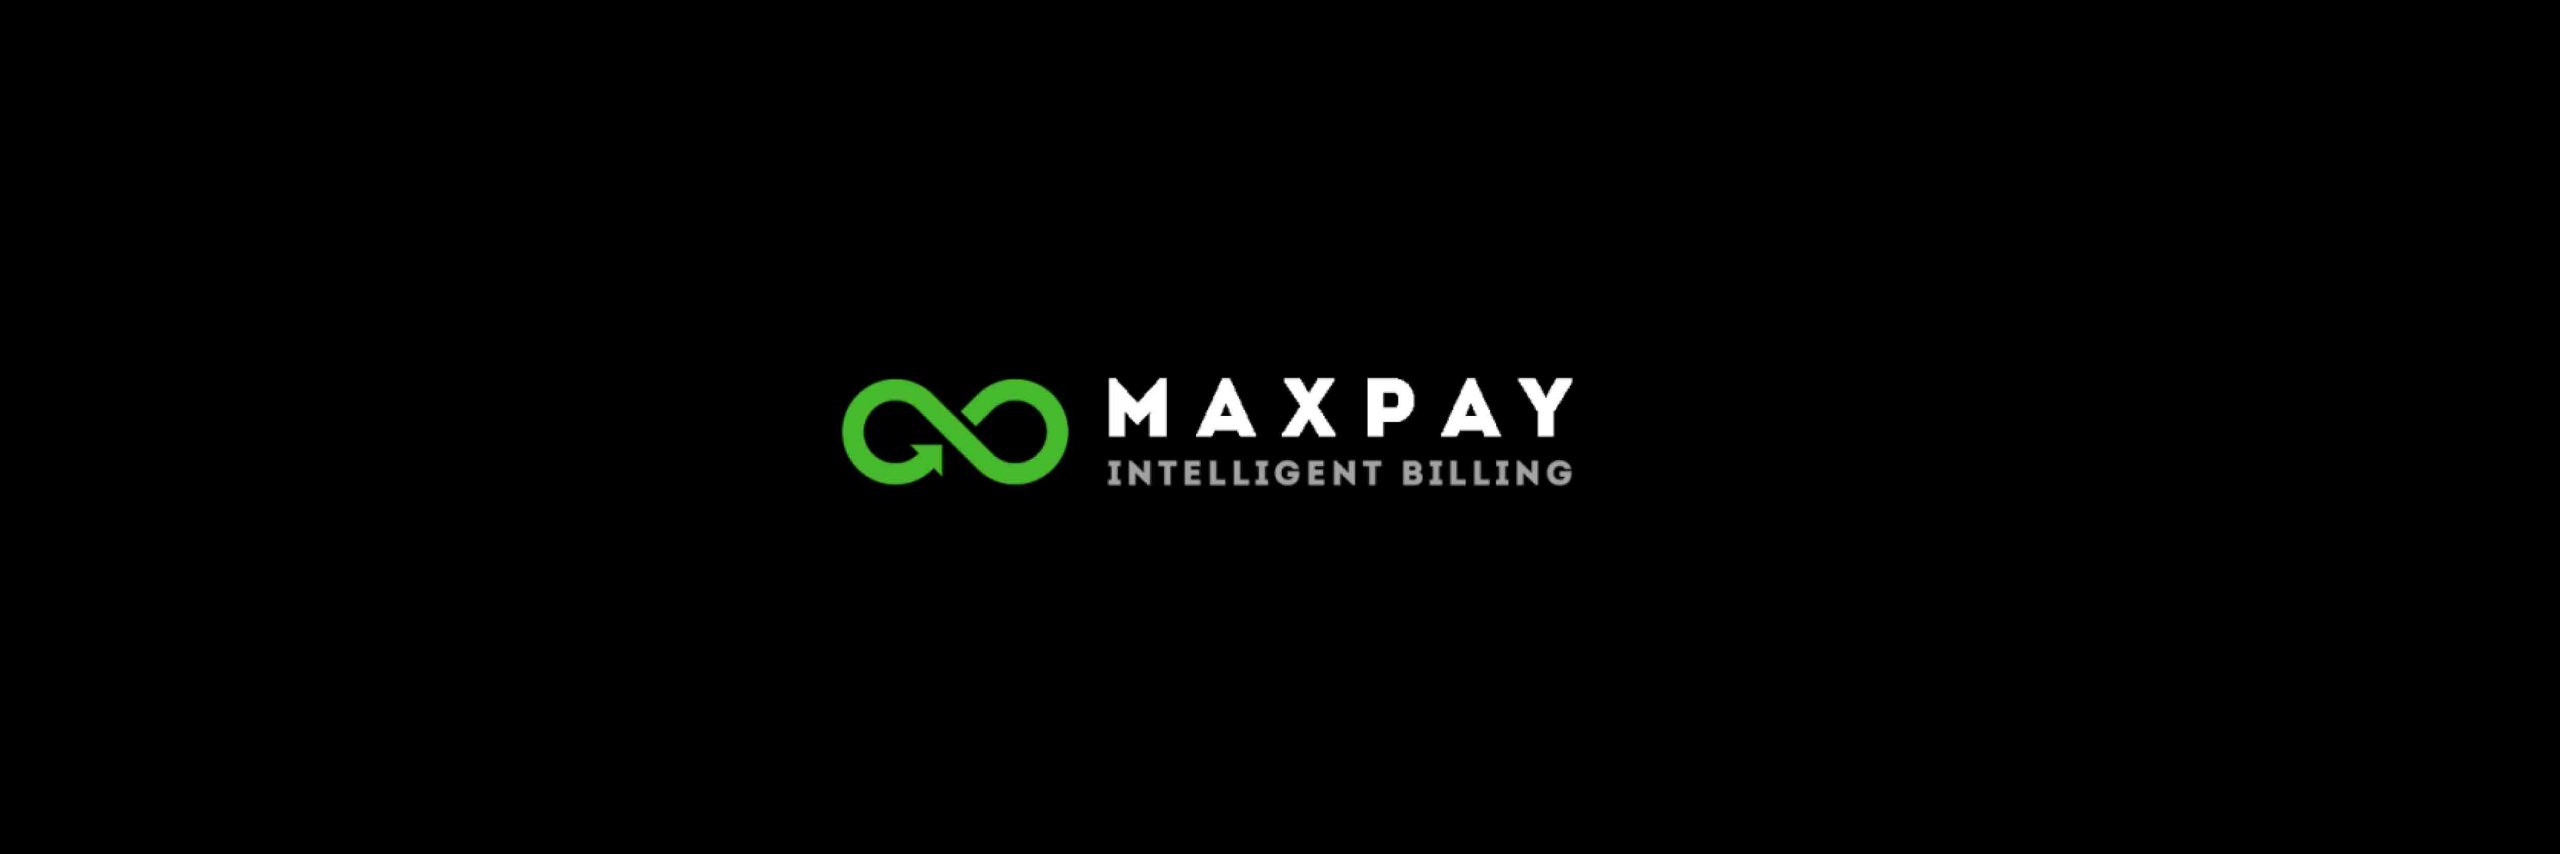 image-of-maxpay-logo